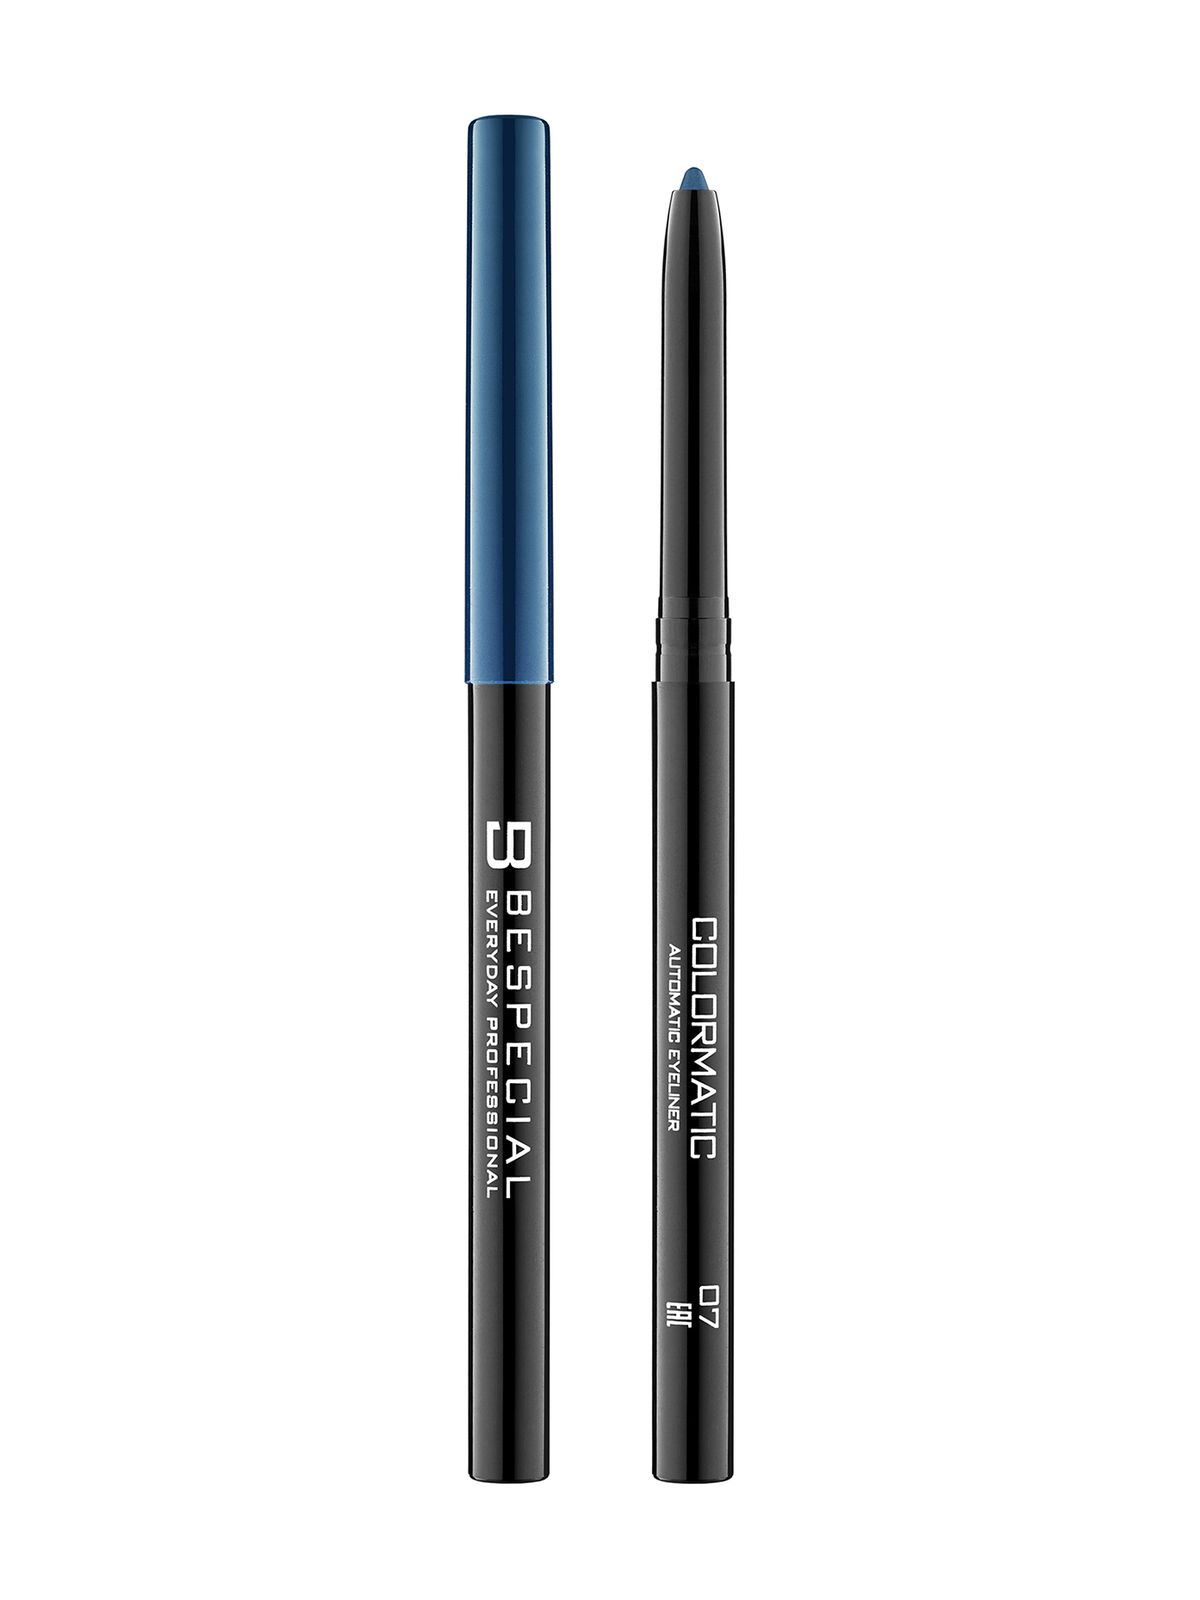 Механический карандаш для глаз Bespecial Colormatic Eye Pencil 7days карандаш для глаз каял механический база под макияж b colour